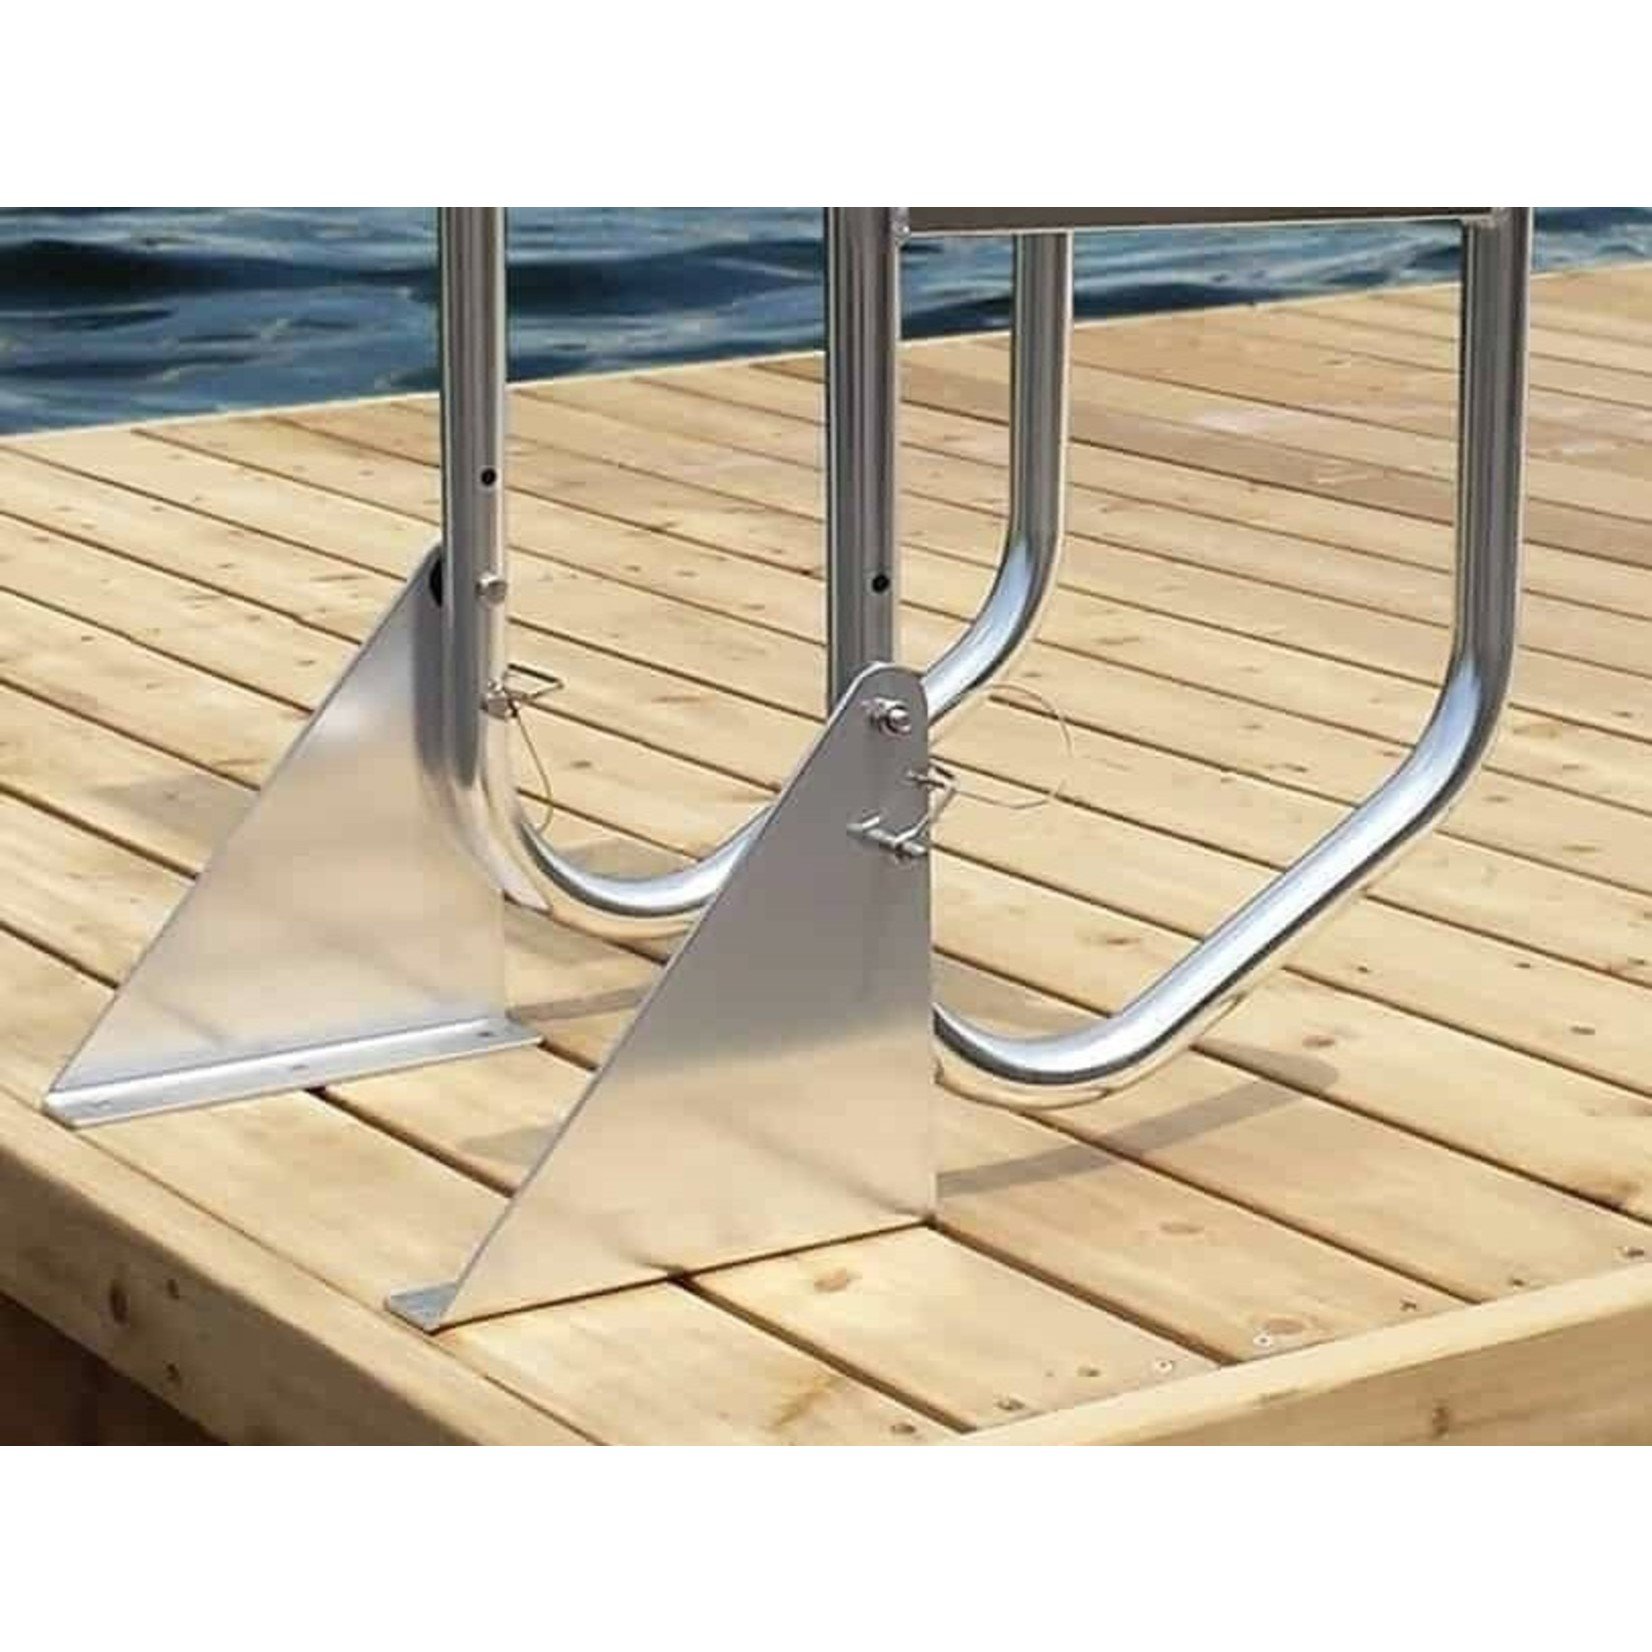 Multinautic Multinautic Flip-up dock ladder kit, aluminum